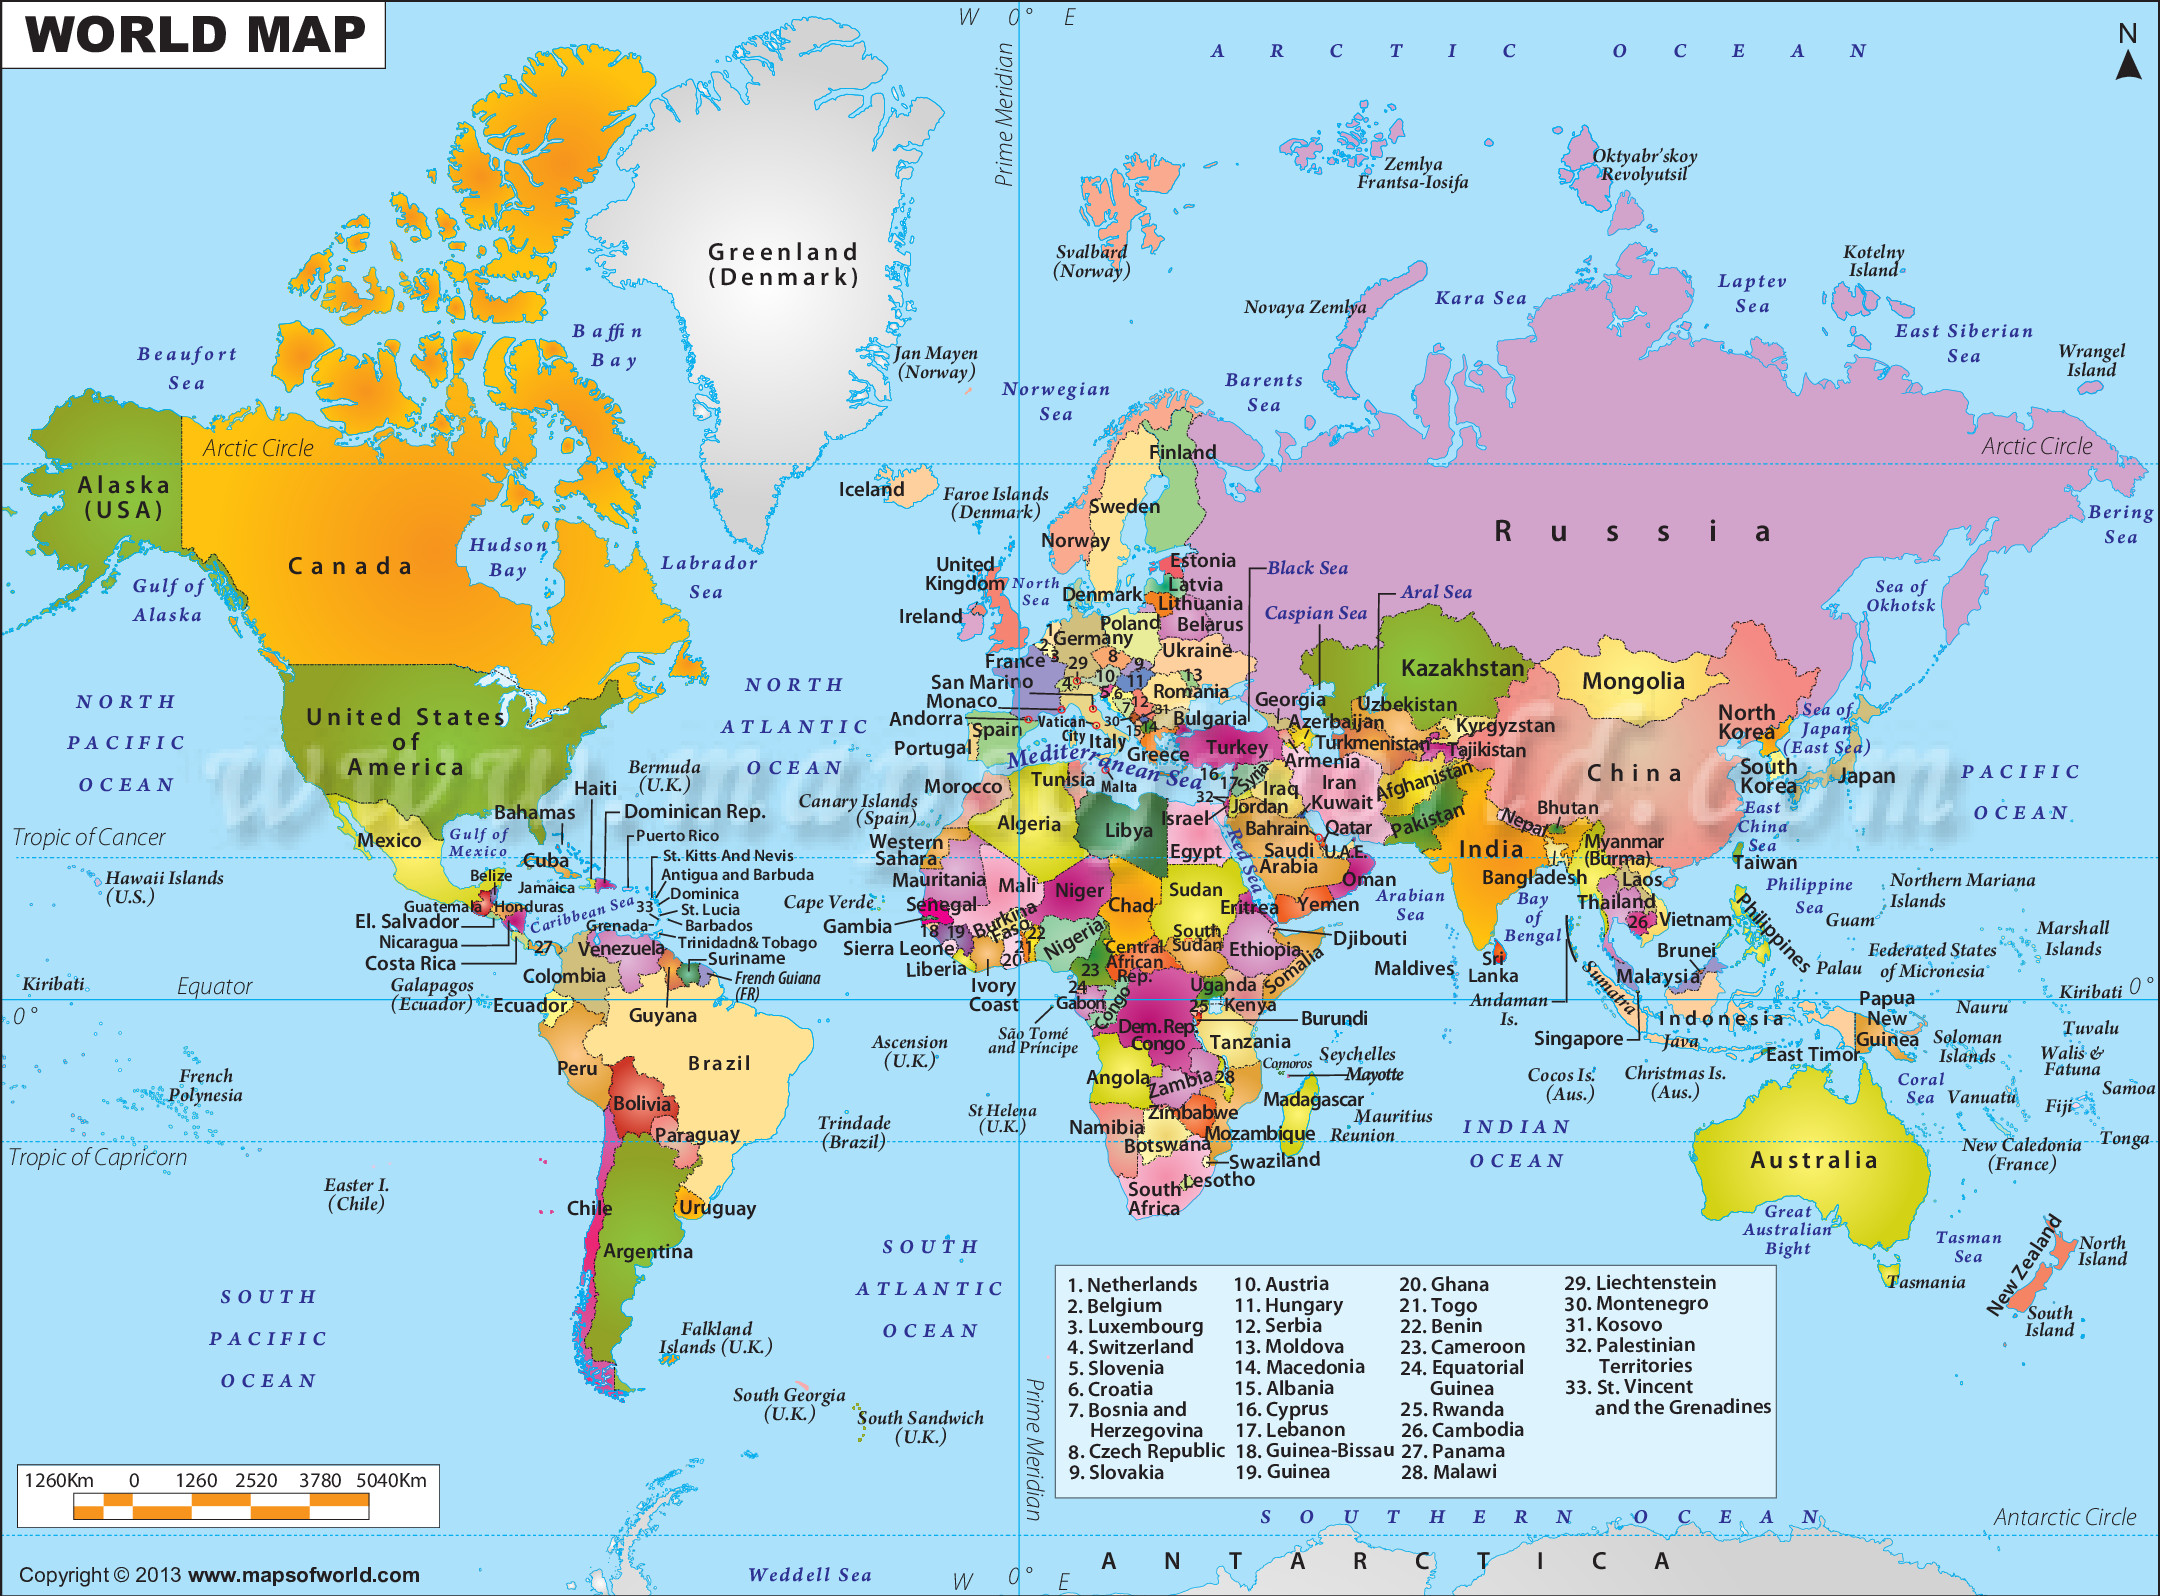 Tải và xem In bản đồ Thế Giới mới nhất và đầy đủ